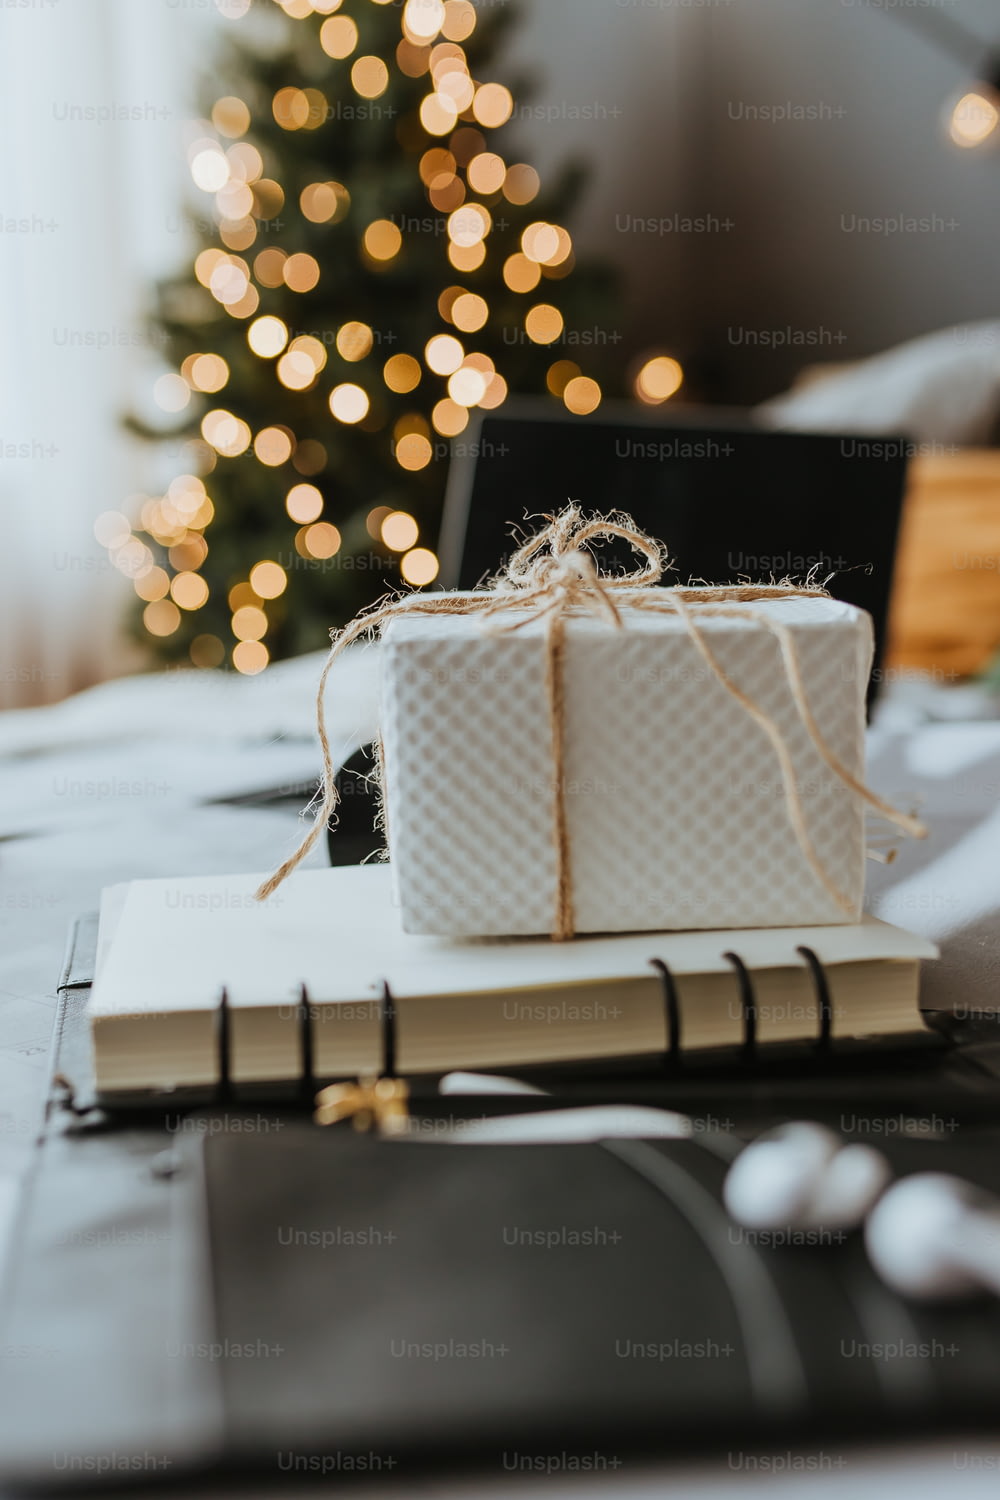 크리스마스 트리 옆에 있는 책 위에 앉아 있는 하얀 선물